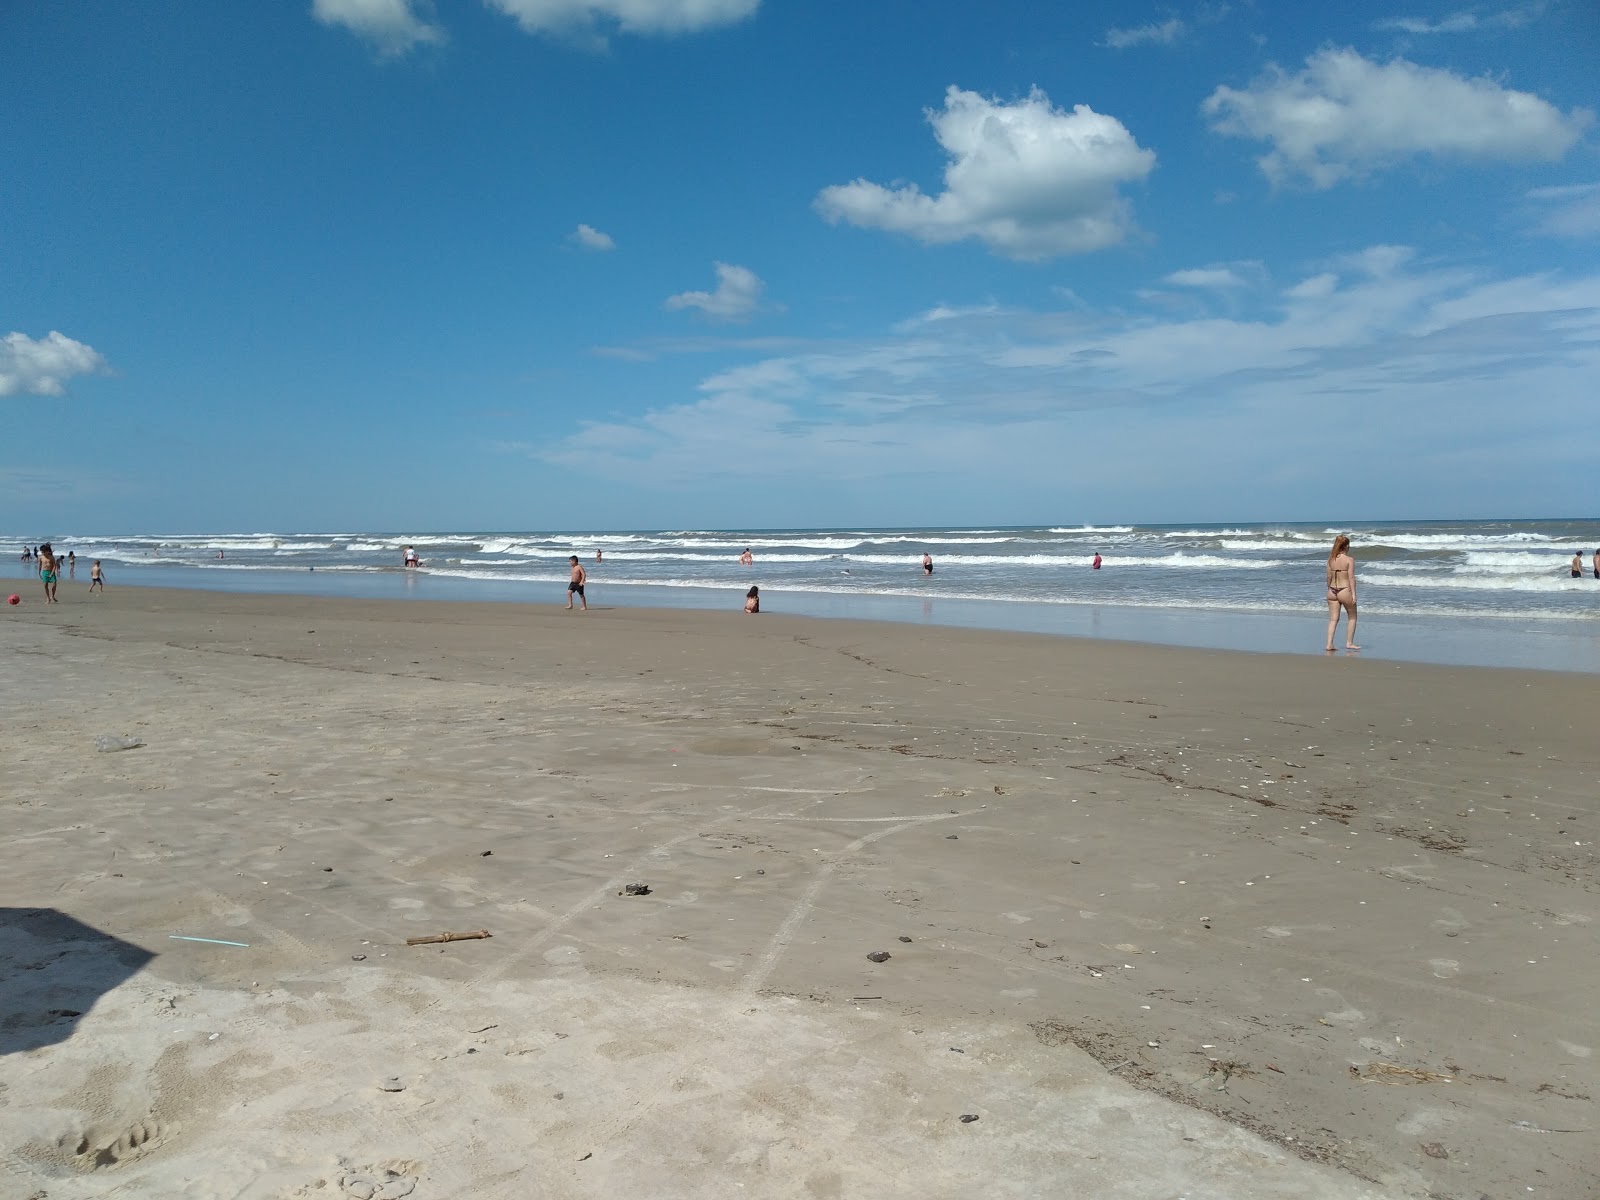 苏尔亚特兰蒂达海滩的照片 具有非常干净级别的清洁度